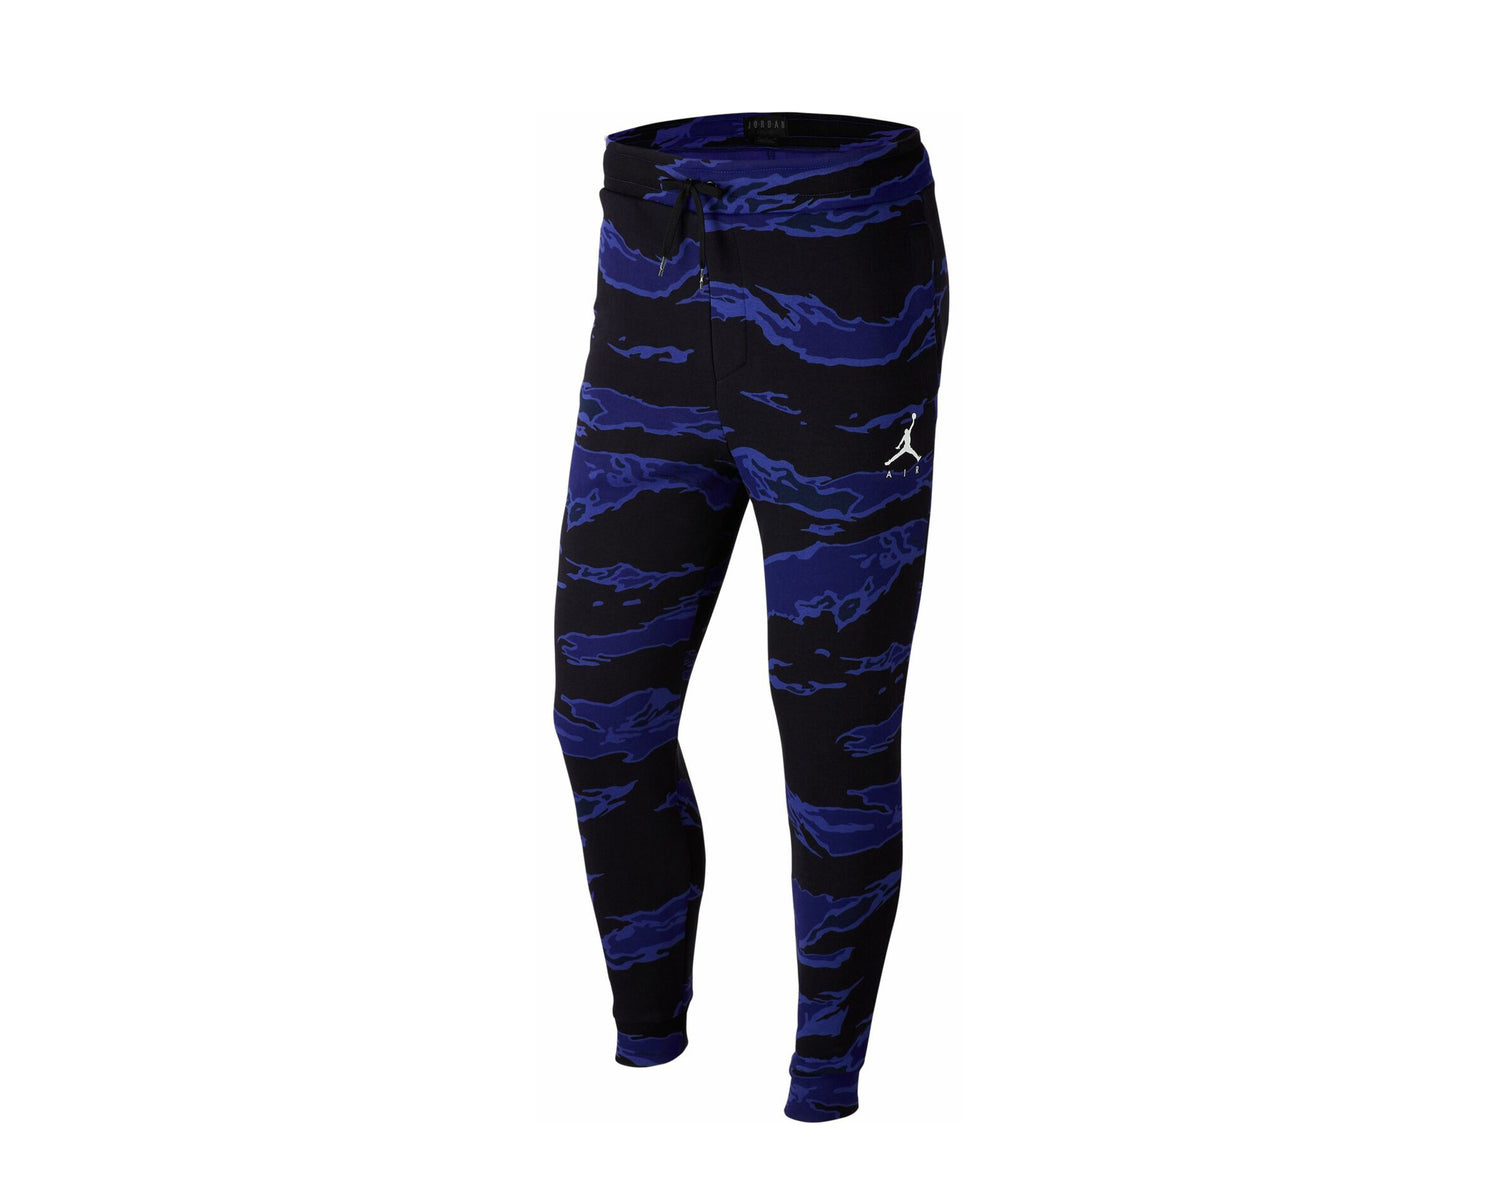 Nike - Men - Pants & Shorts